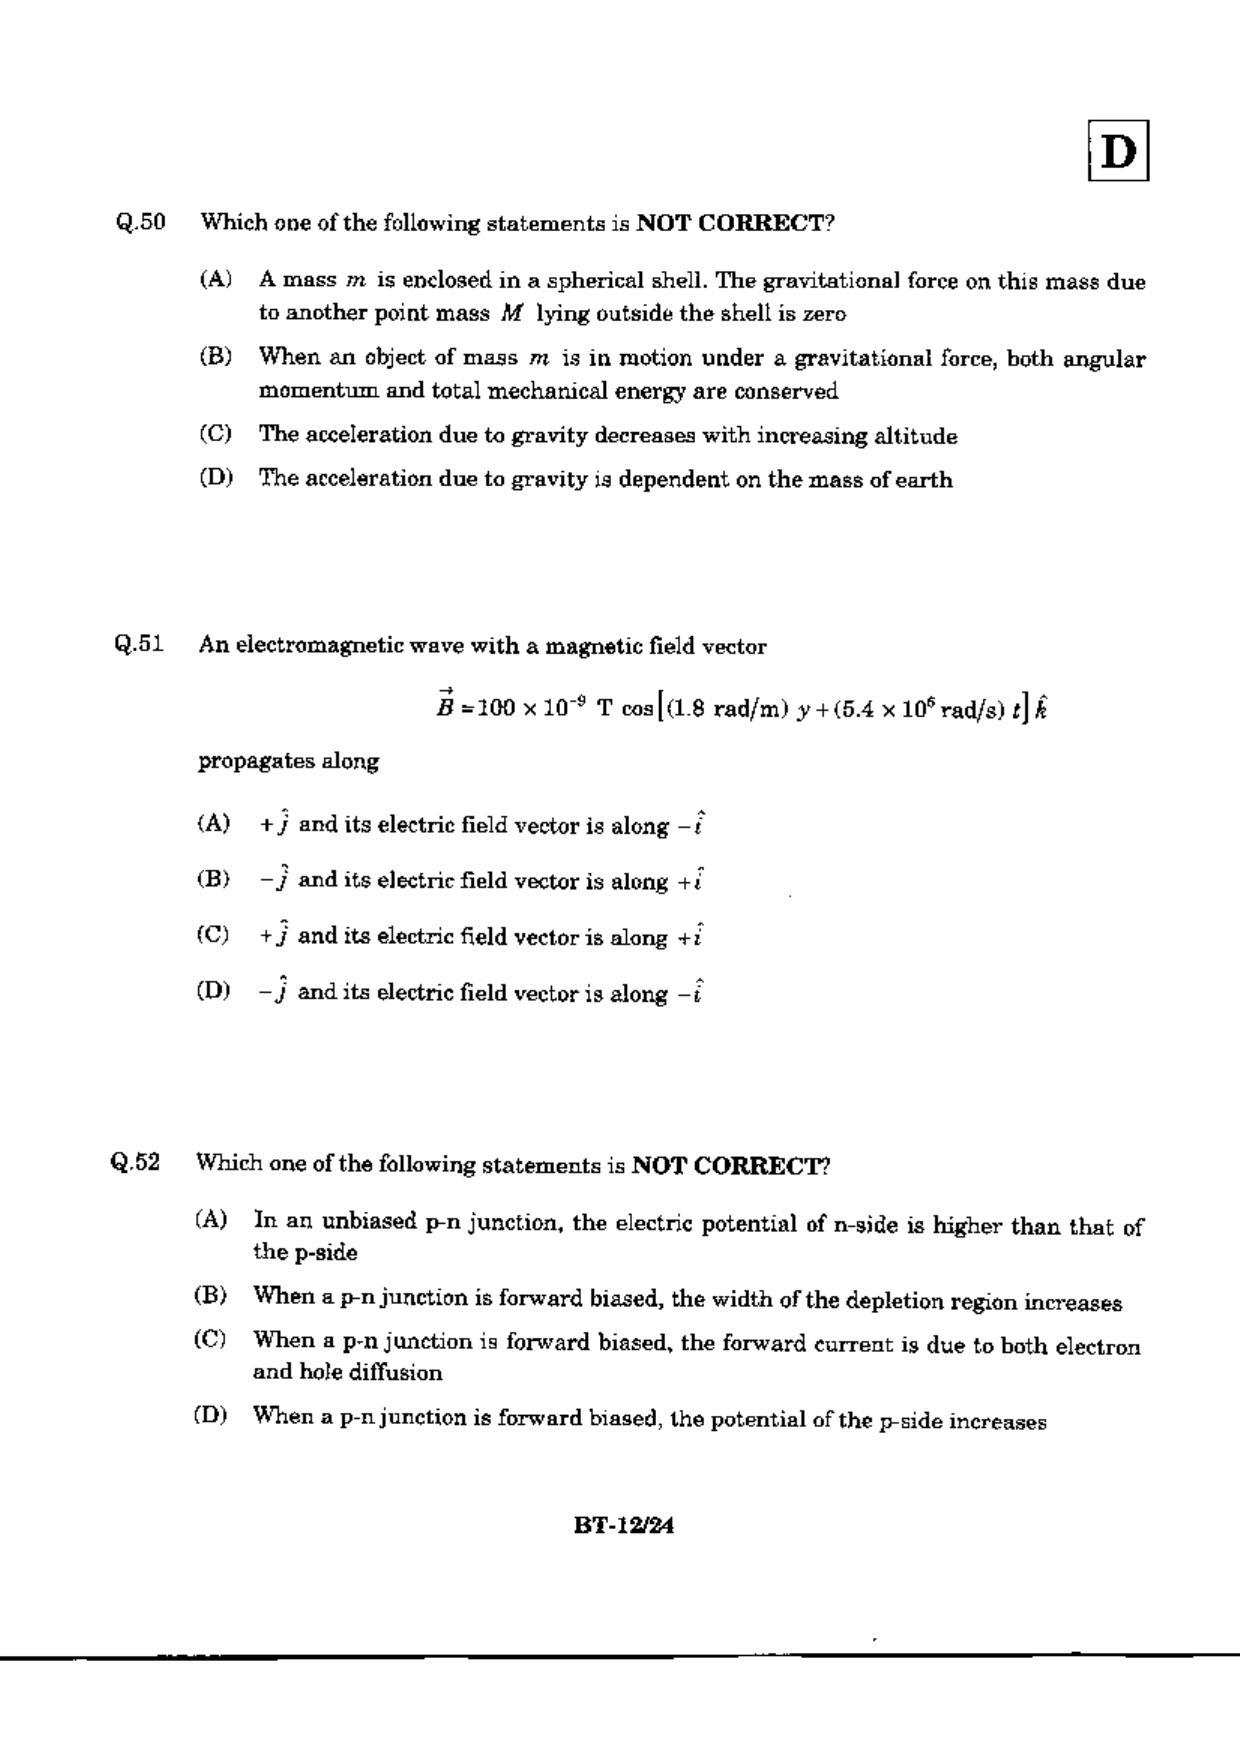 JAM 2010: BT Question Paper - Page 14